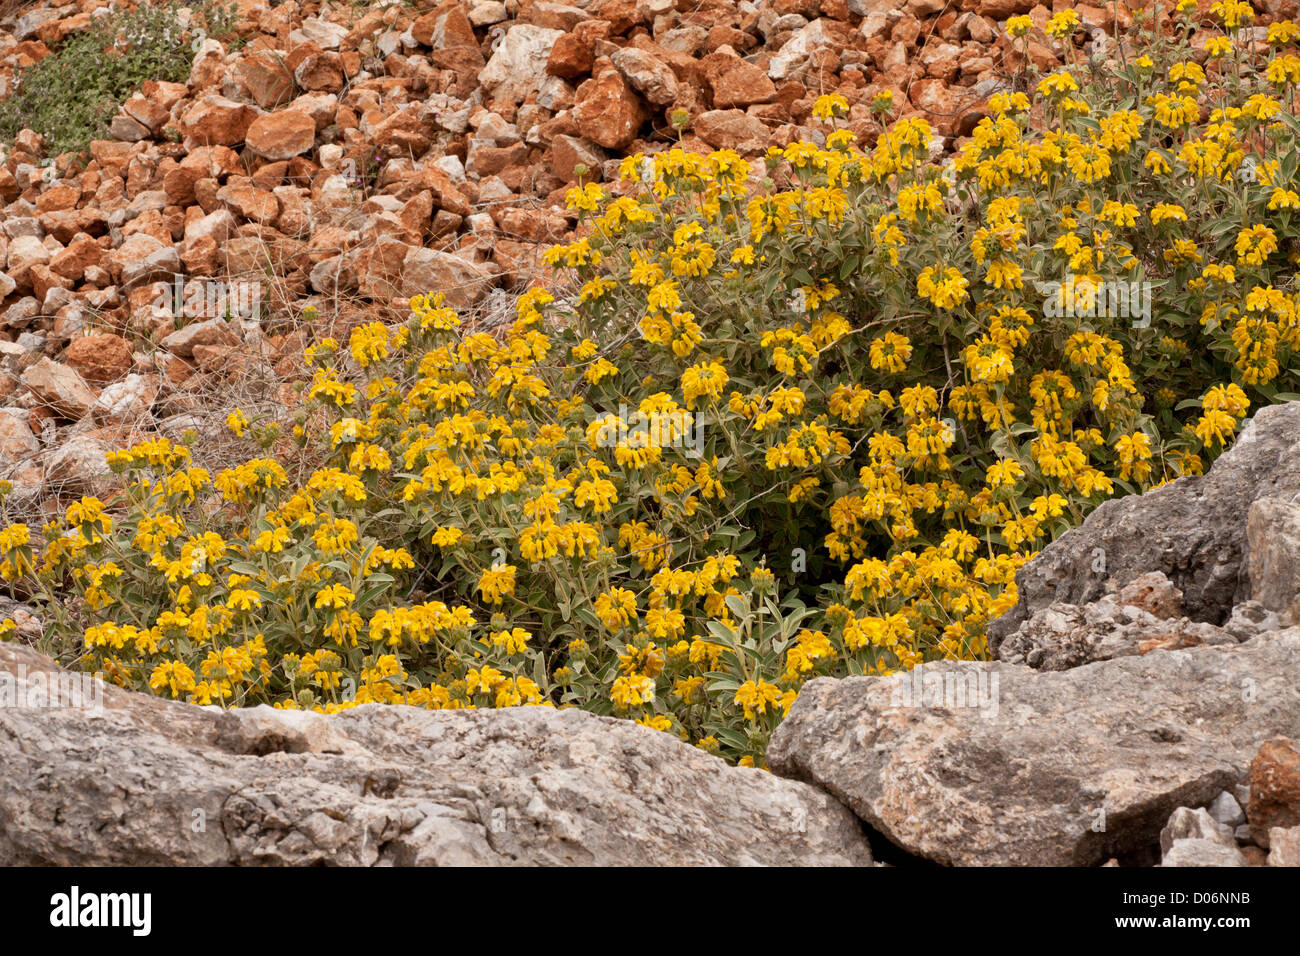 Jérusalem Sage, Phlomis fruticosa en pleine floraison à Delphes, Grèce. Banque D'Images